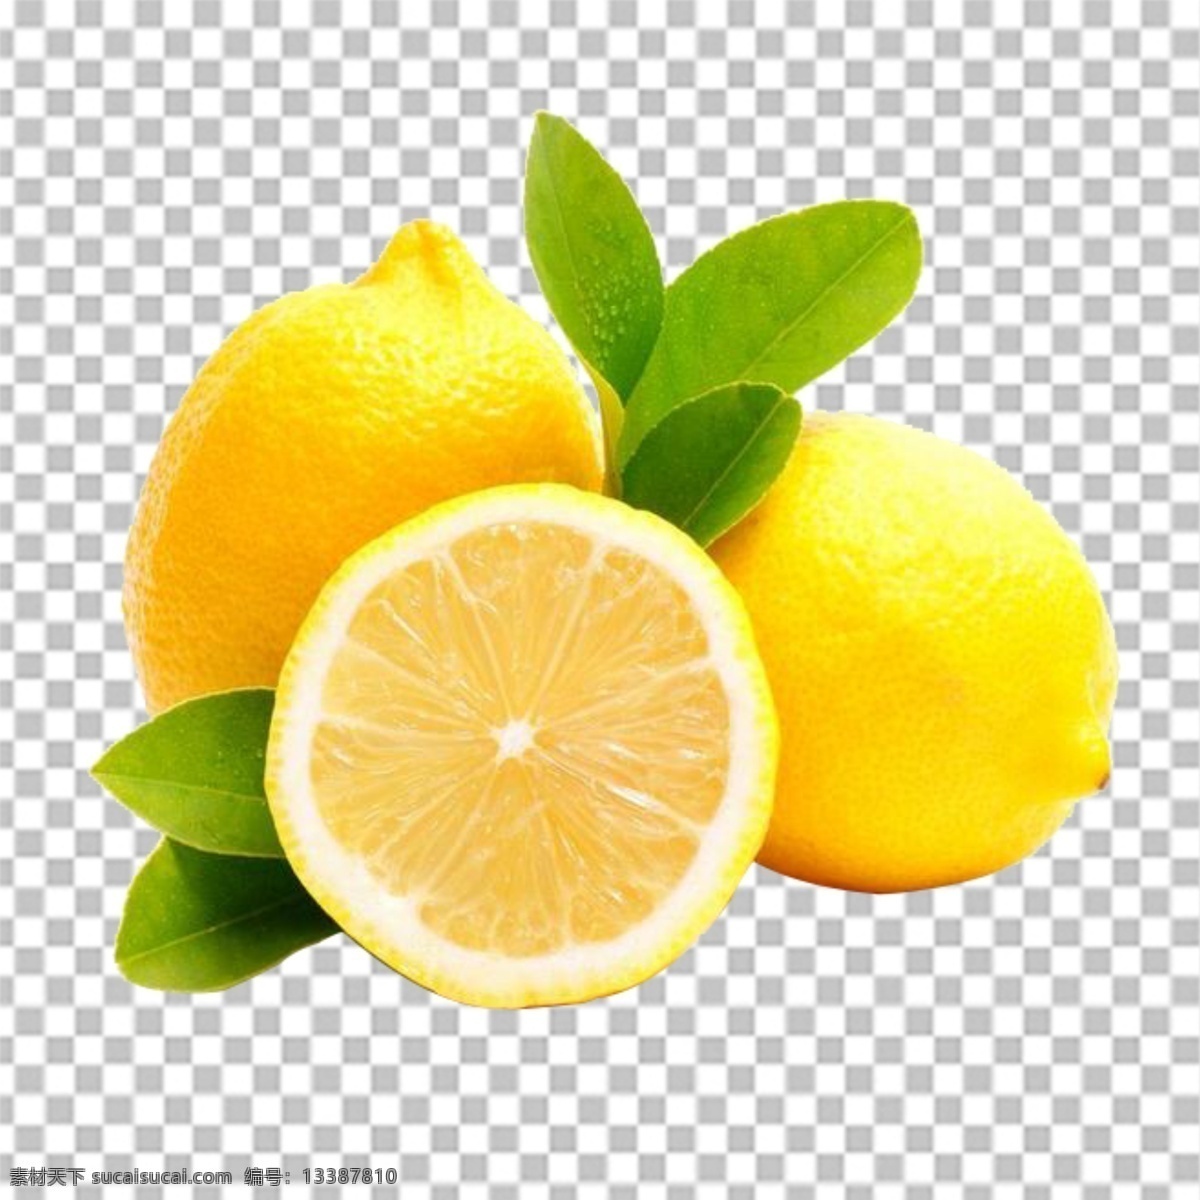 水果特写图片 柠檬 树叶 水果特写 水果写真 透明底水果 免抠图 水果 分层图 通道 分层 新鲜 特写 透明背景 透明底 抠图 png图 生物世界 水果透明底